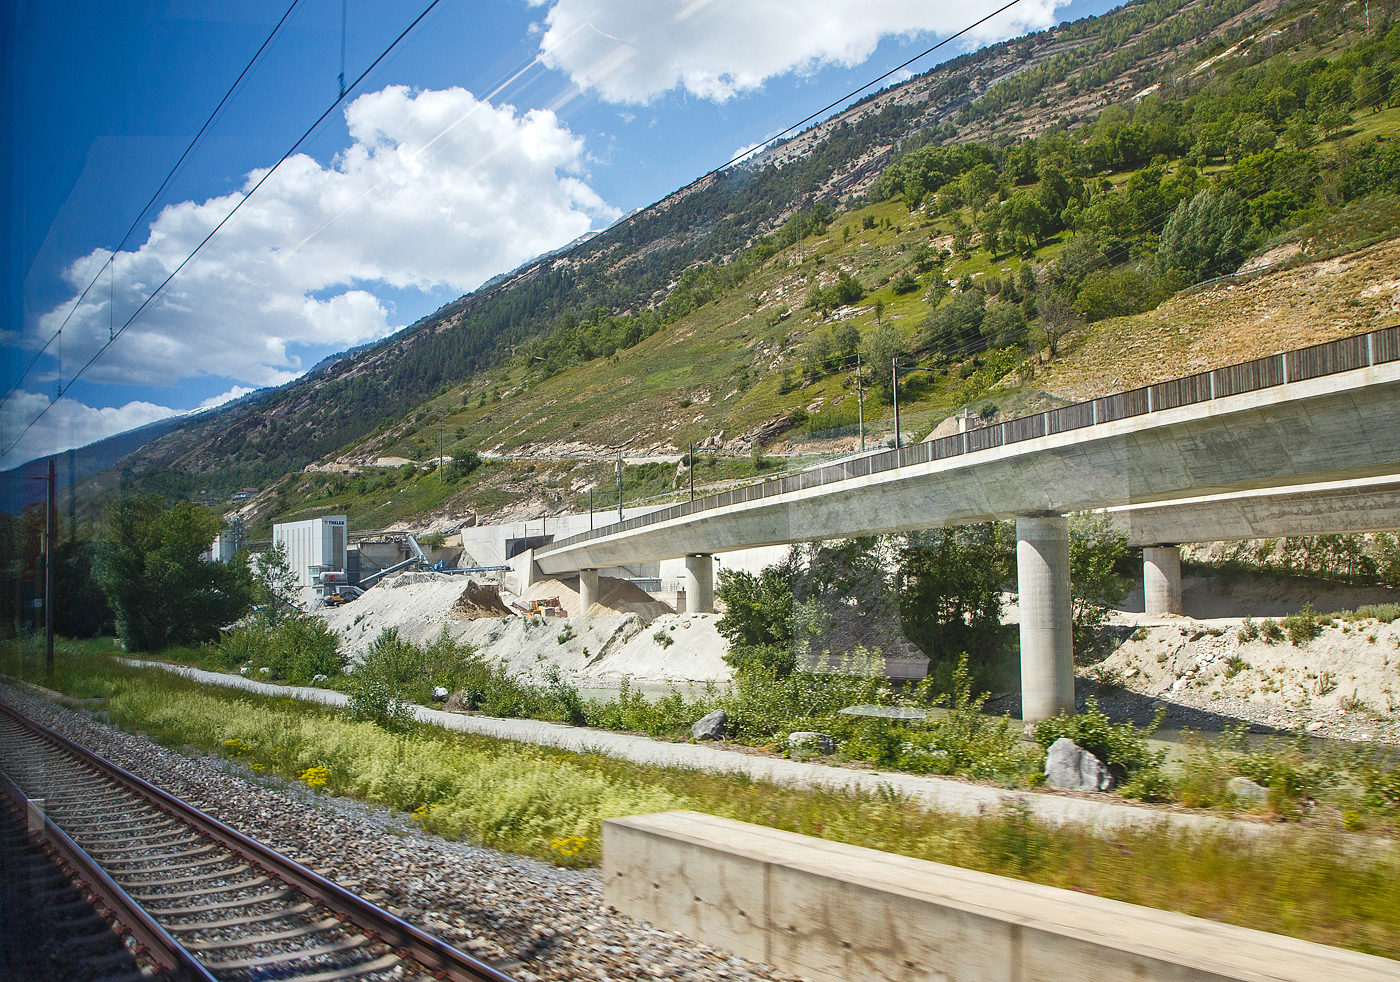 Südeinfahrt und –portal vom Lötschberg-Basistunnel bei Raron am 26.05.2023 aus einem IC heraus.

Der Lötschberg-Basistunnel ist ein 34,6 Kilometer langer Eisenbahntunnel, der zwischen Frutigen im Berner Oberland (Kanton Bern) und Raron (Kanton Wallis) am Lötschberg die nördliche Alpenkette unterquert und am 16. Juni 2007 in Betrieb genommen wurde. Dieser Basistunnel ist Teil der Lötschberg-Simplon-Achse der Neuen Eisenbahn-Alpentransversale (NEAT), die von Basel über Bern–Thun–Spiez zum Lötschberg und weiter via Brig–Simplon–Domodossola nach Mailand und Novara–Genua führt und neben der parallel verlaufenden Gotthardachse eine zweite Route für den alpenquerenden Schienengüterverkehr des Europäischen Korridors 24 (Rotterdam–Genua) bildet. Der Lötschberg-Basistunnel ist der fünftlängste Eisenbahntunnel der Welt, nach dem Gotthard-Basistunnel, dem Seikan-Tunnel, Eurotunnel und dem Yulhyeon-Tunnel. 

Der Basistunnel ist nur zu rund 40 Prozent zweispurig befahrbar. Auf einer Länge von 14 Kilometern wurde eine zweite Röhre zwar ausgebrochen, aber nicht für den Bahnbetrieb ausgerüstet. Weitere sieben Kilometer müssten noch ausgebrochen werden, damit die Züge den Tunnel durchgängig auf zwei Spuren befahren könnten. Wegen knapper Finanzmittel war der Tunnel in diesem reduziertem Umfang erstellt worden. Über den weiteren Ausbau laufen seit 2014 parlamentarische Beratungen.

Verlauf
Die beiden Röhren verlaufen in einem Regel-Achsabstand von 40 m und sind durch 104 Querschläge (mittlerer Längsabstand: 333 m) miteinander verbunden.

Die zulässige Höchstgeschwindigkeit im Basistunnel beträgt 250 km/h.Die Einmündung in die Rhonetalstrecke ist für 160 km/h ausgelegt, die Verknüpfung Wengi Ey für 120 km/h.
